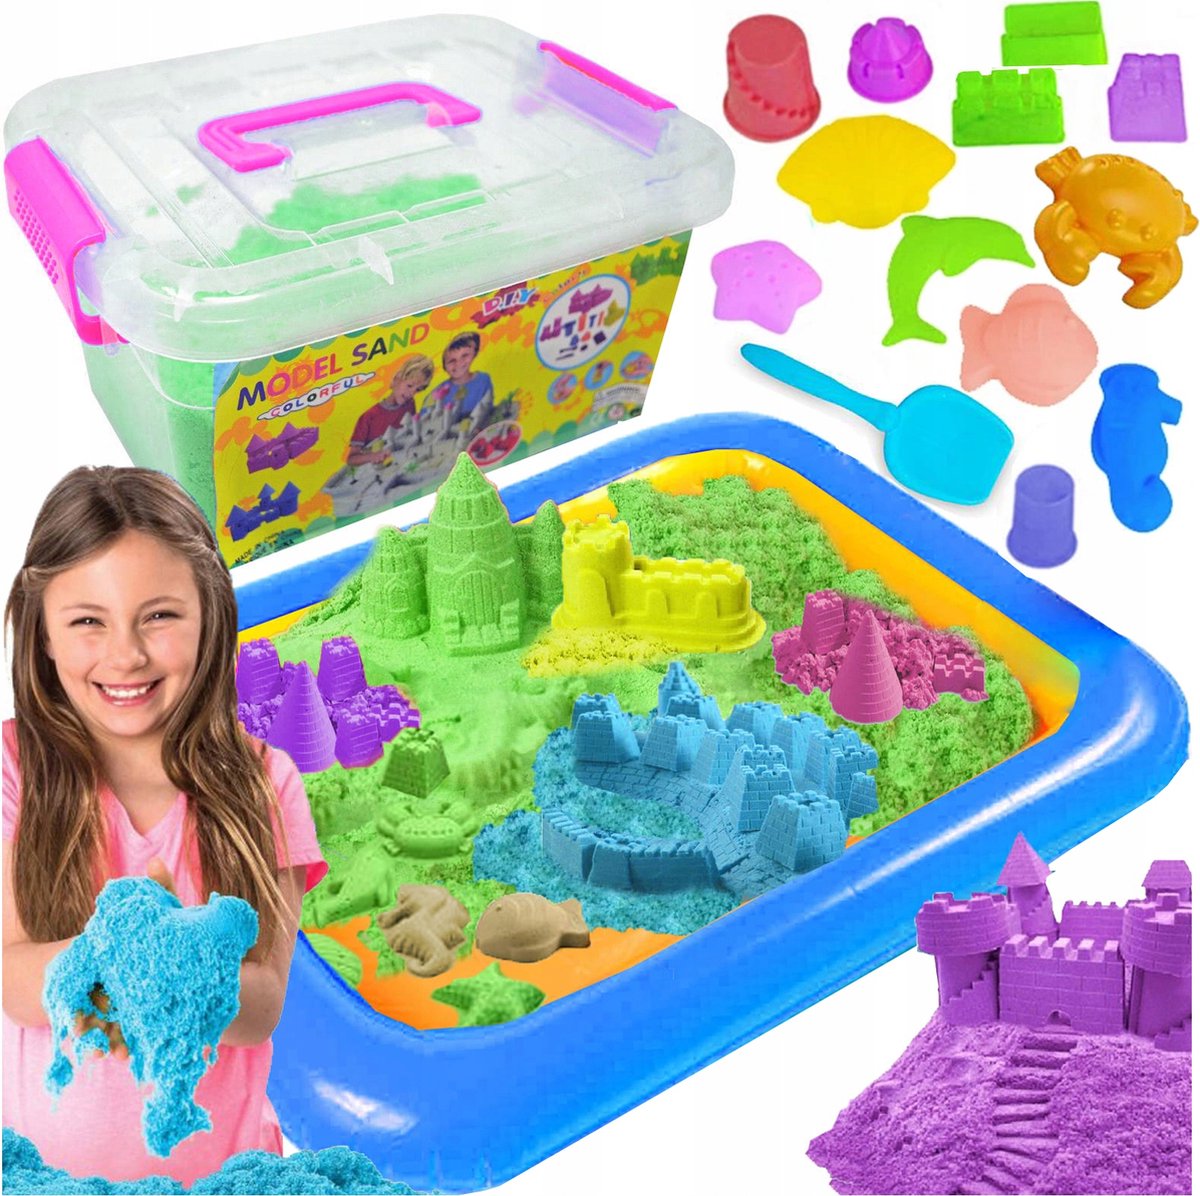 Kinetisch Zand - 2 kg Magisch Zand - Met Opblaas Zandbak - Inclusief vormpjes - Willekeurige kleur -Speelzand - Sensorisch Speelgoed - Montessori Speelgoed - Ontwikkelings Speelgoed - Jongens en Meisjes